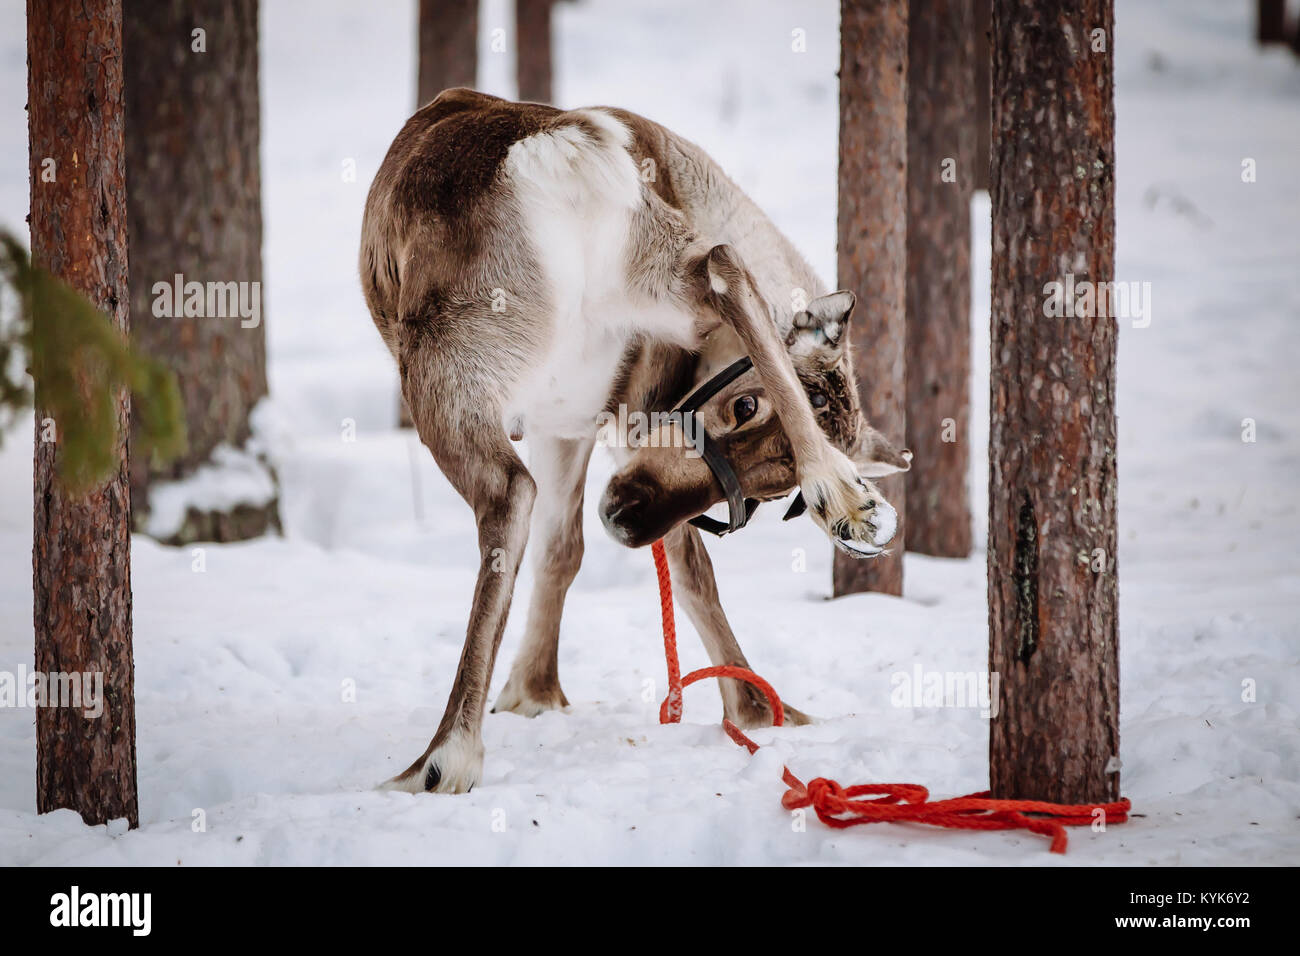 La renna è uno dei simboli della Lapponia finlandese. Levi. Foto Stock